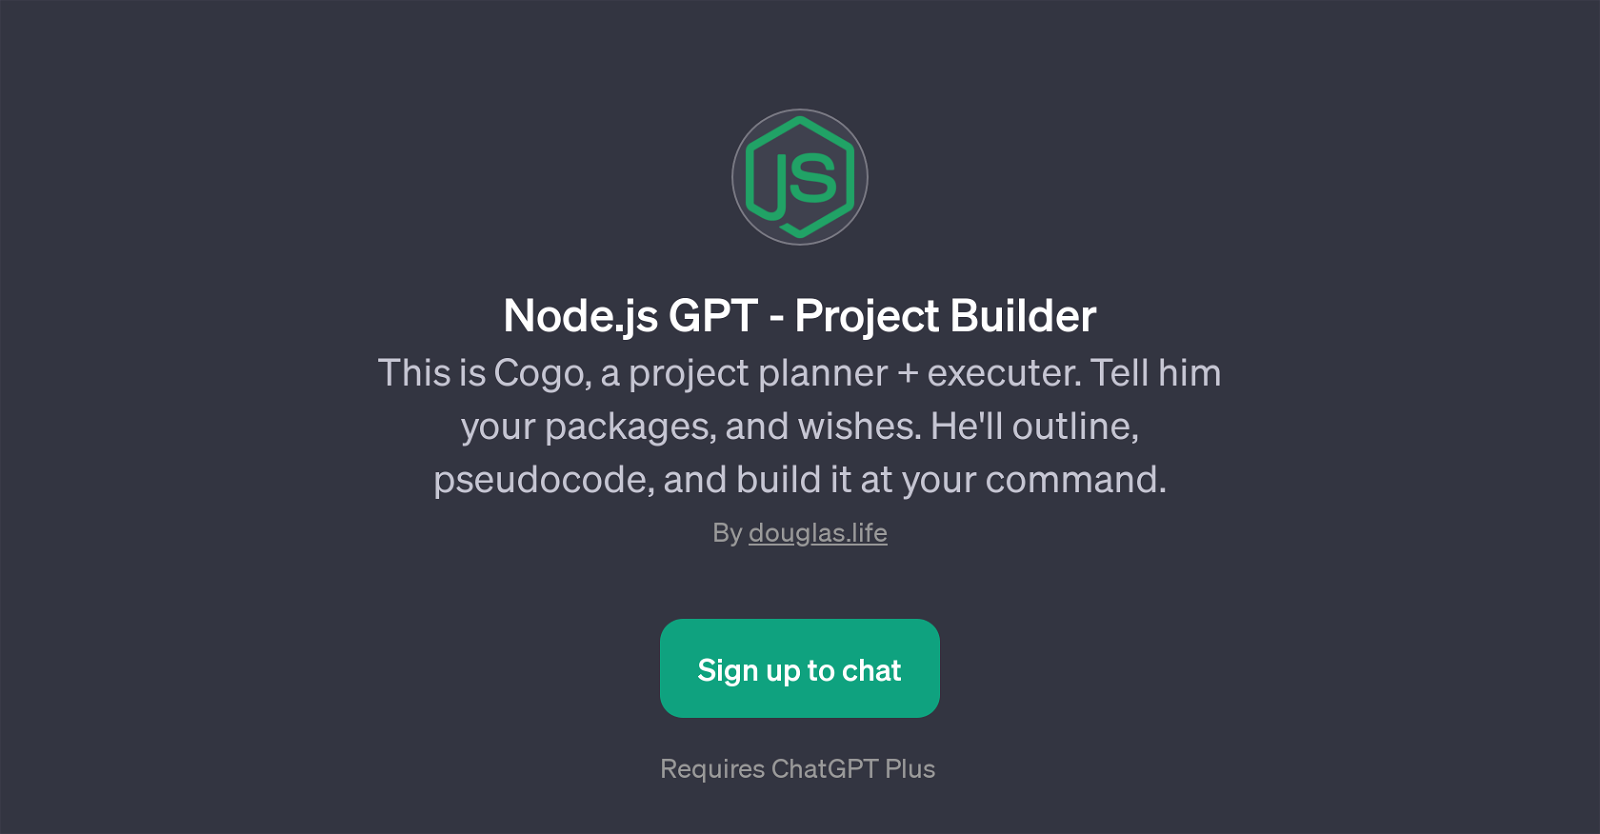 Node.js GPT - Project Builder website